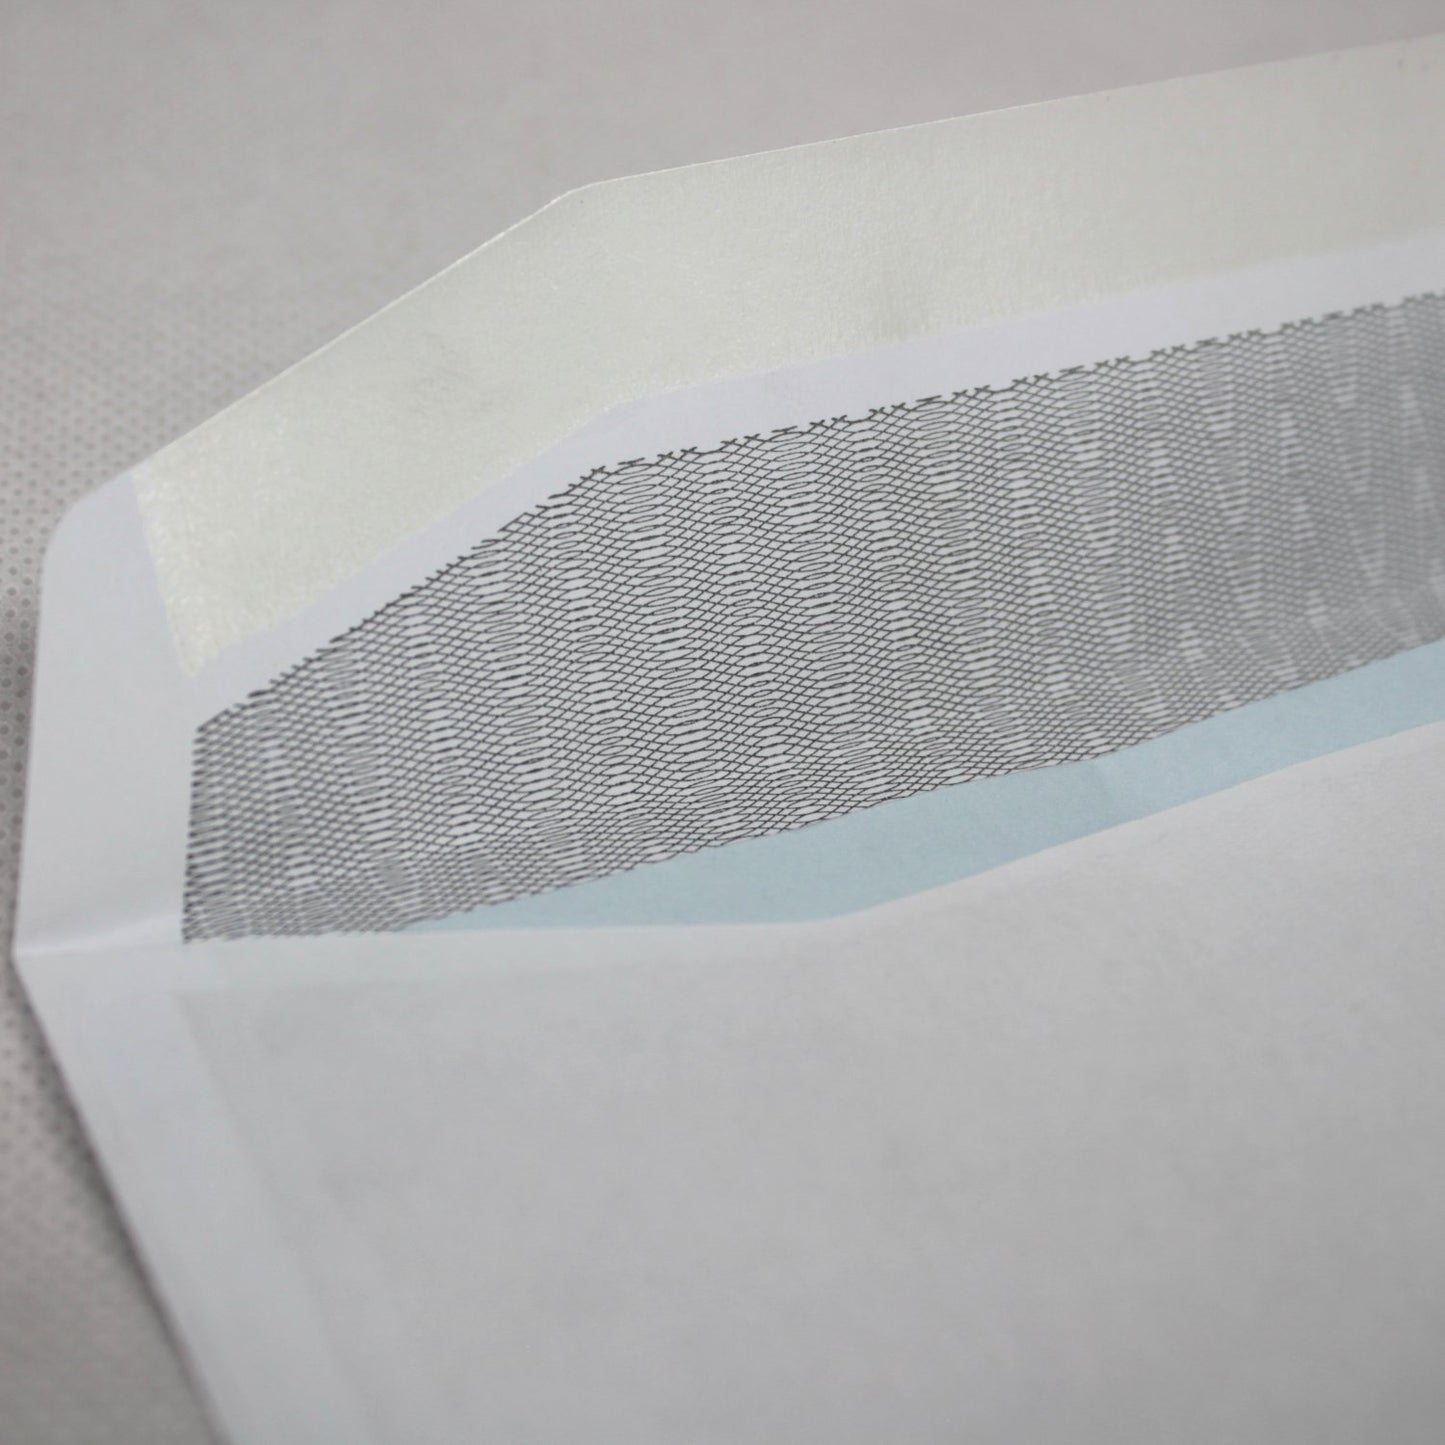 114x162mm C6 White Gummed Envelopes (None Window)